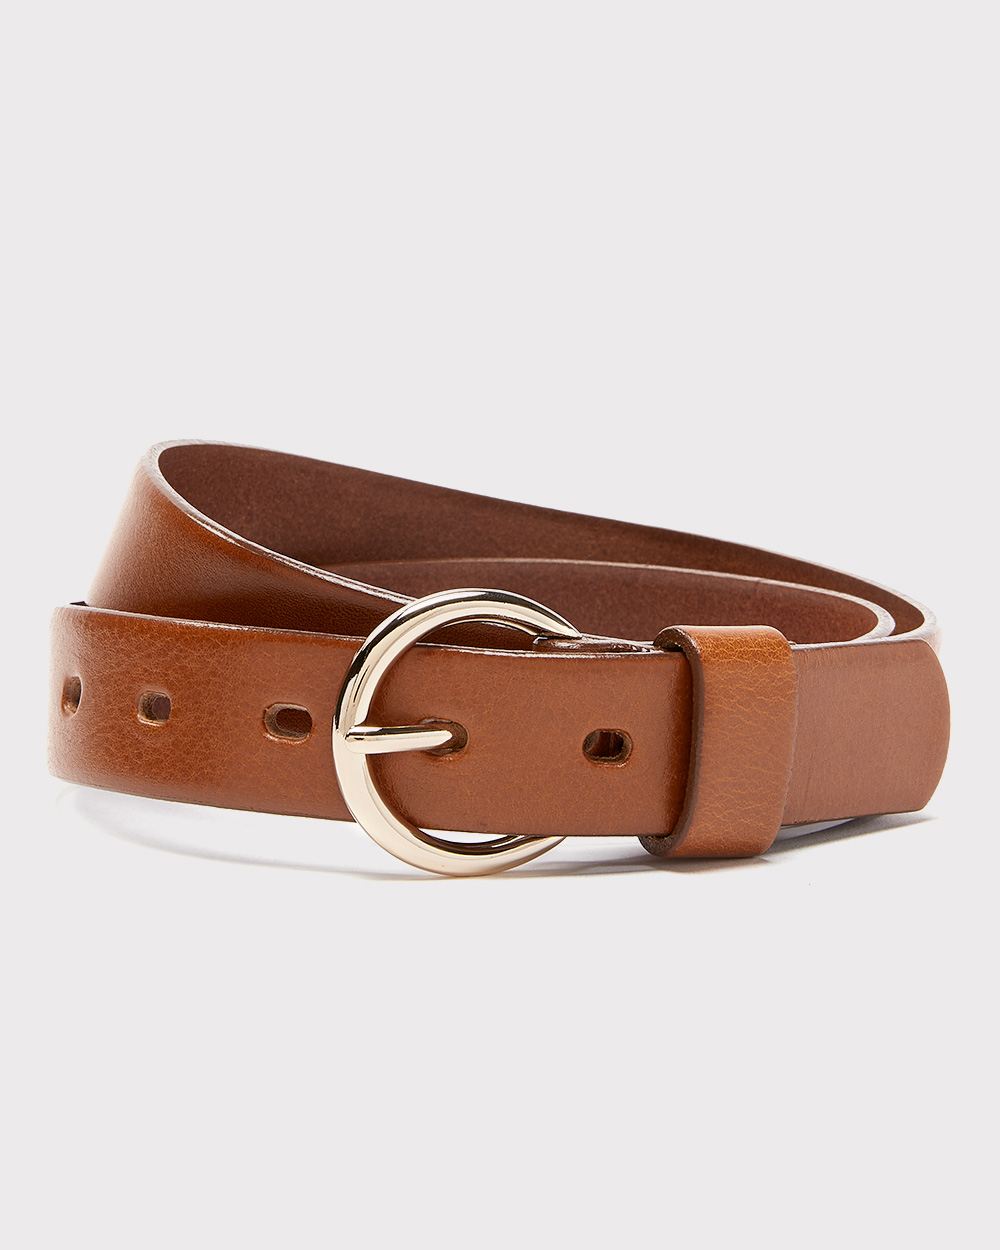 Leather belt | RW&CO.